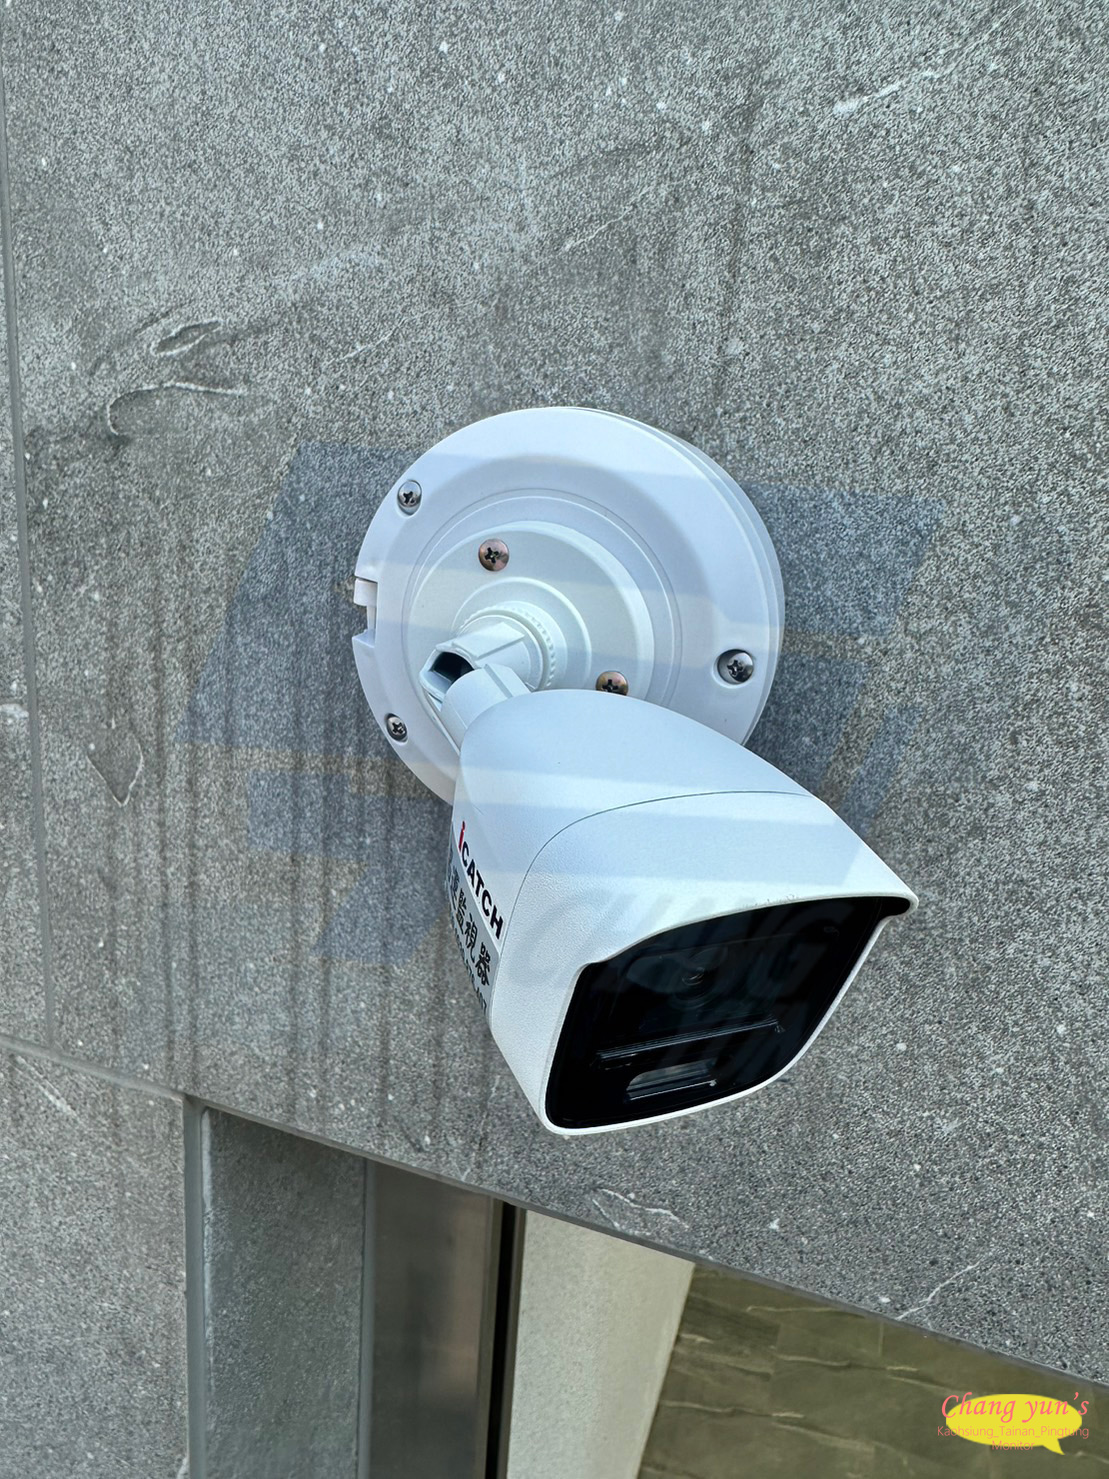 高雄市大社區監視器安裝案例 監視系統推薦安裝廠商